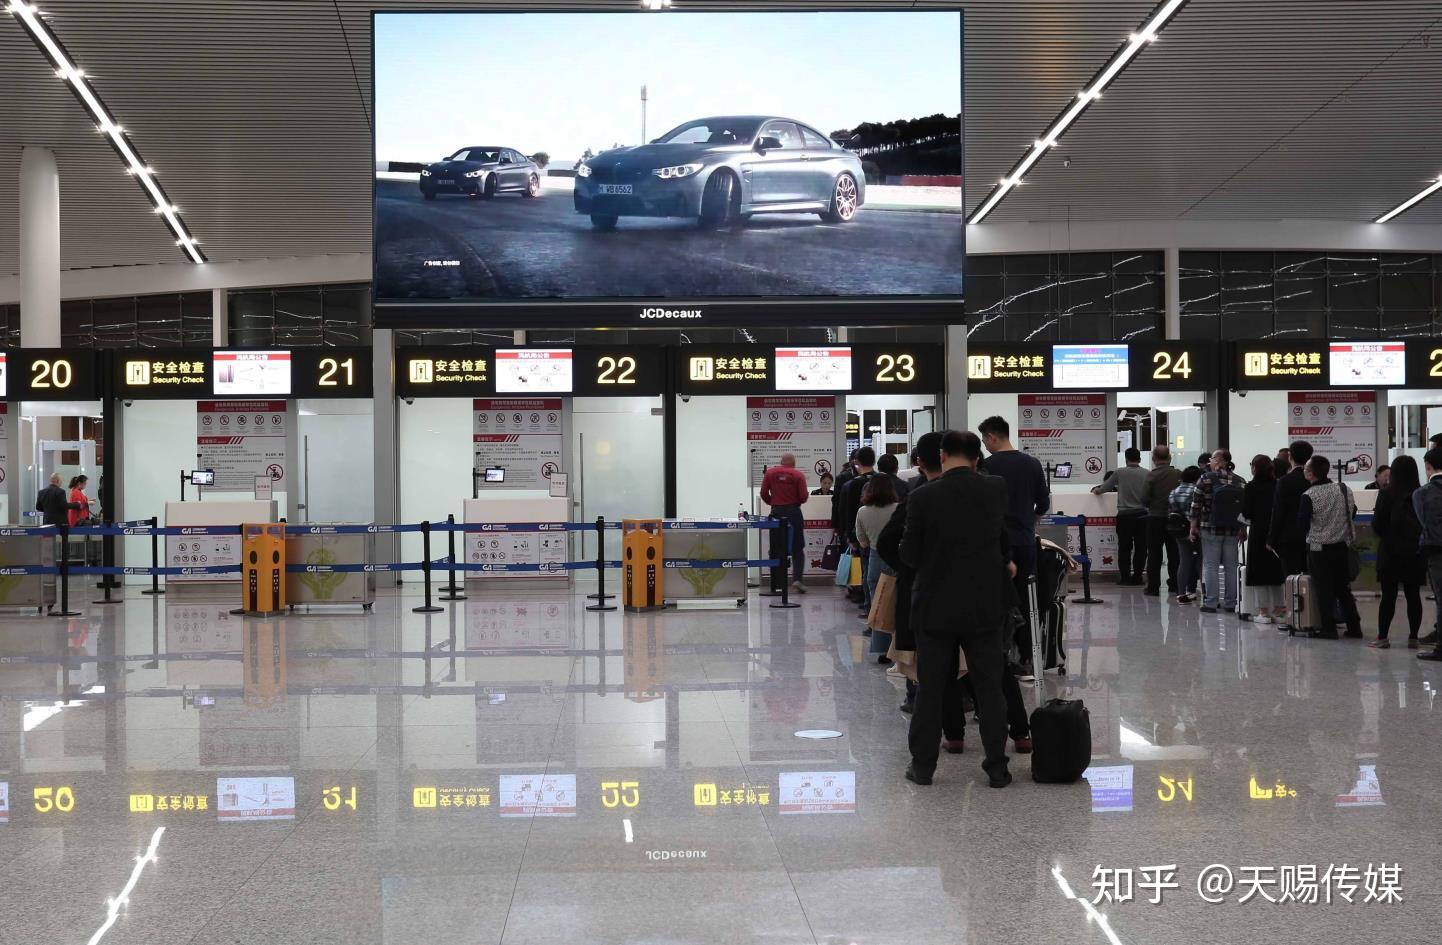 江北机场现场图片,重庆江北机场实拍 - 伤感说说吧